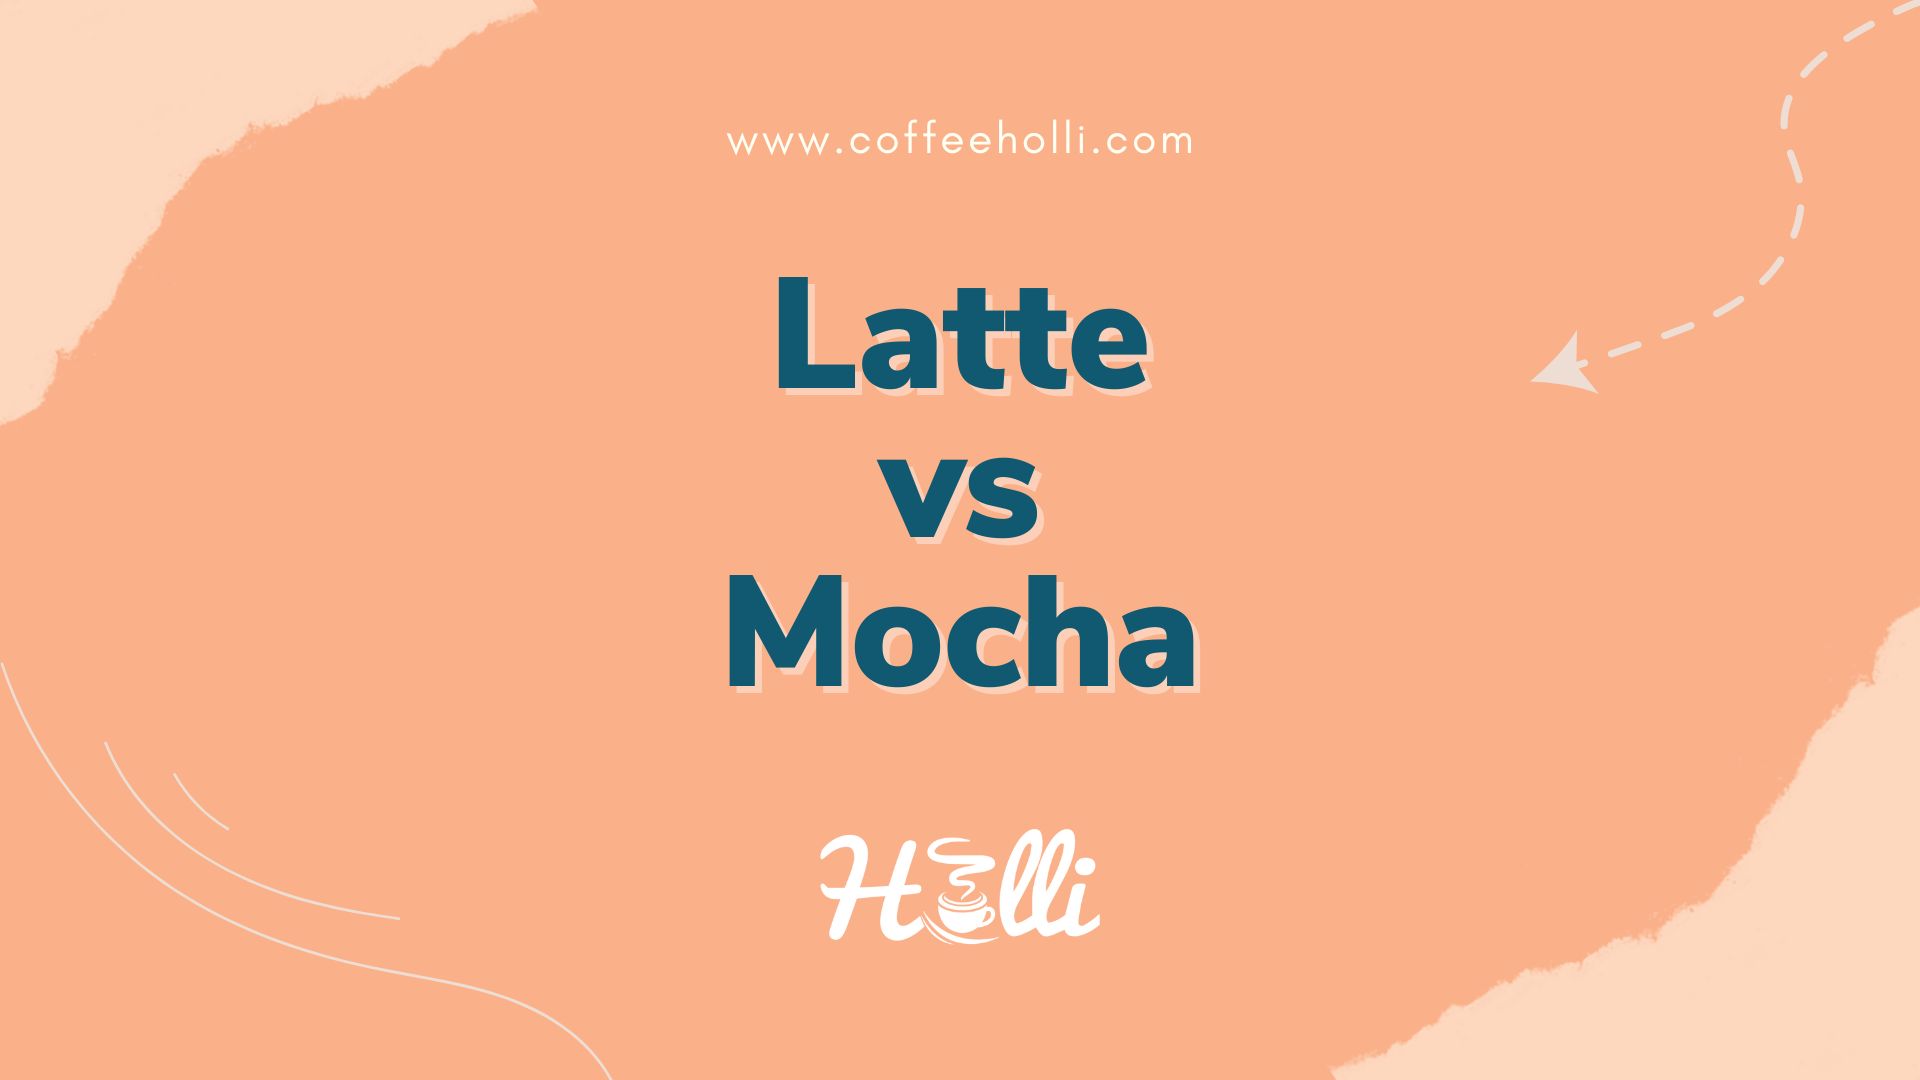 Latte vs Mocha